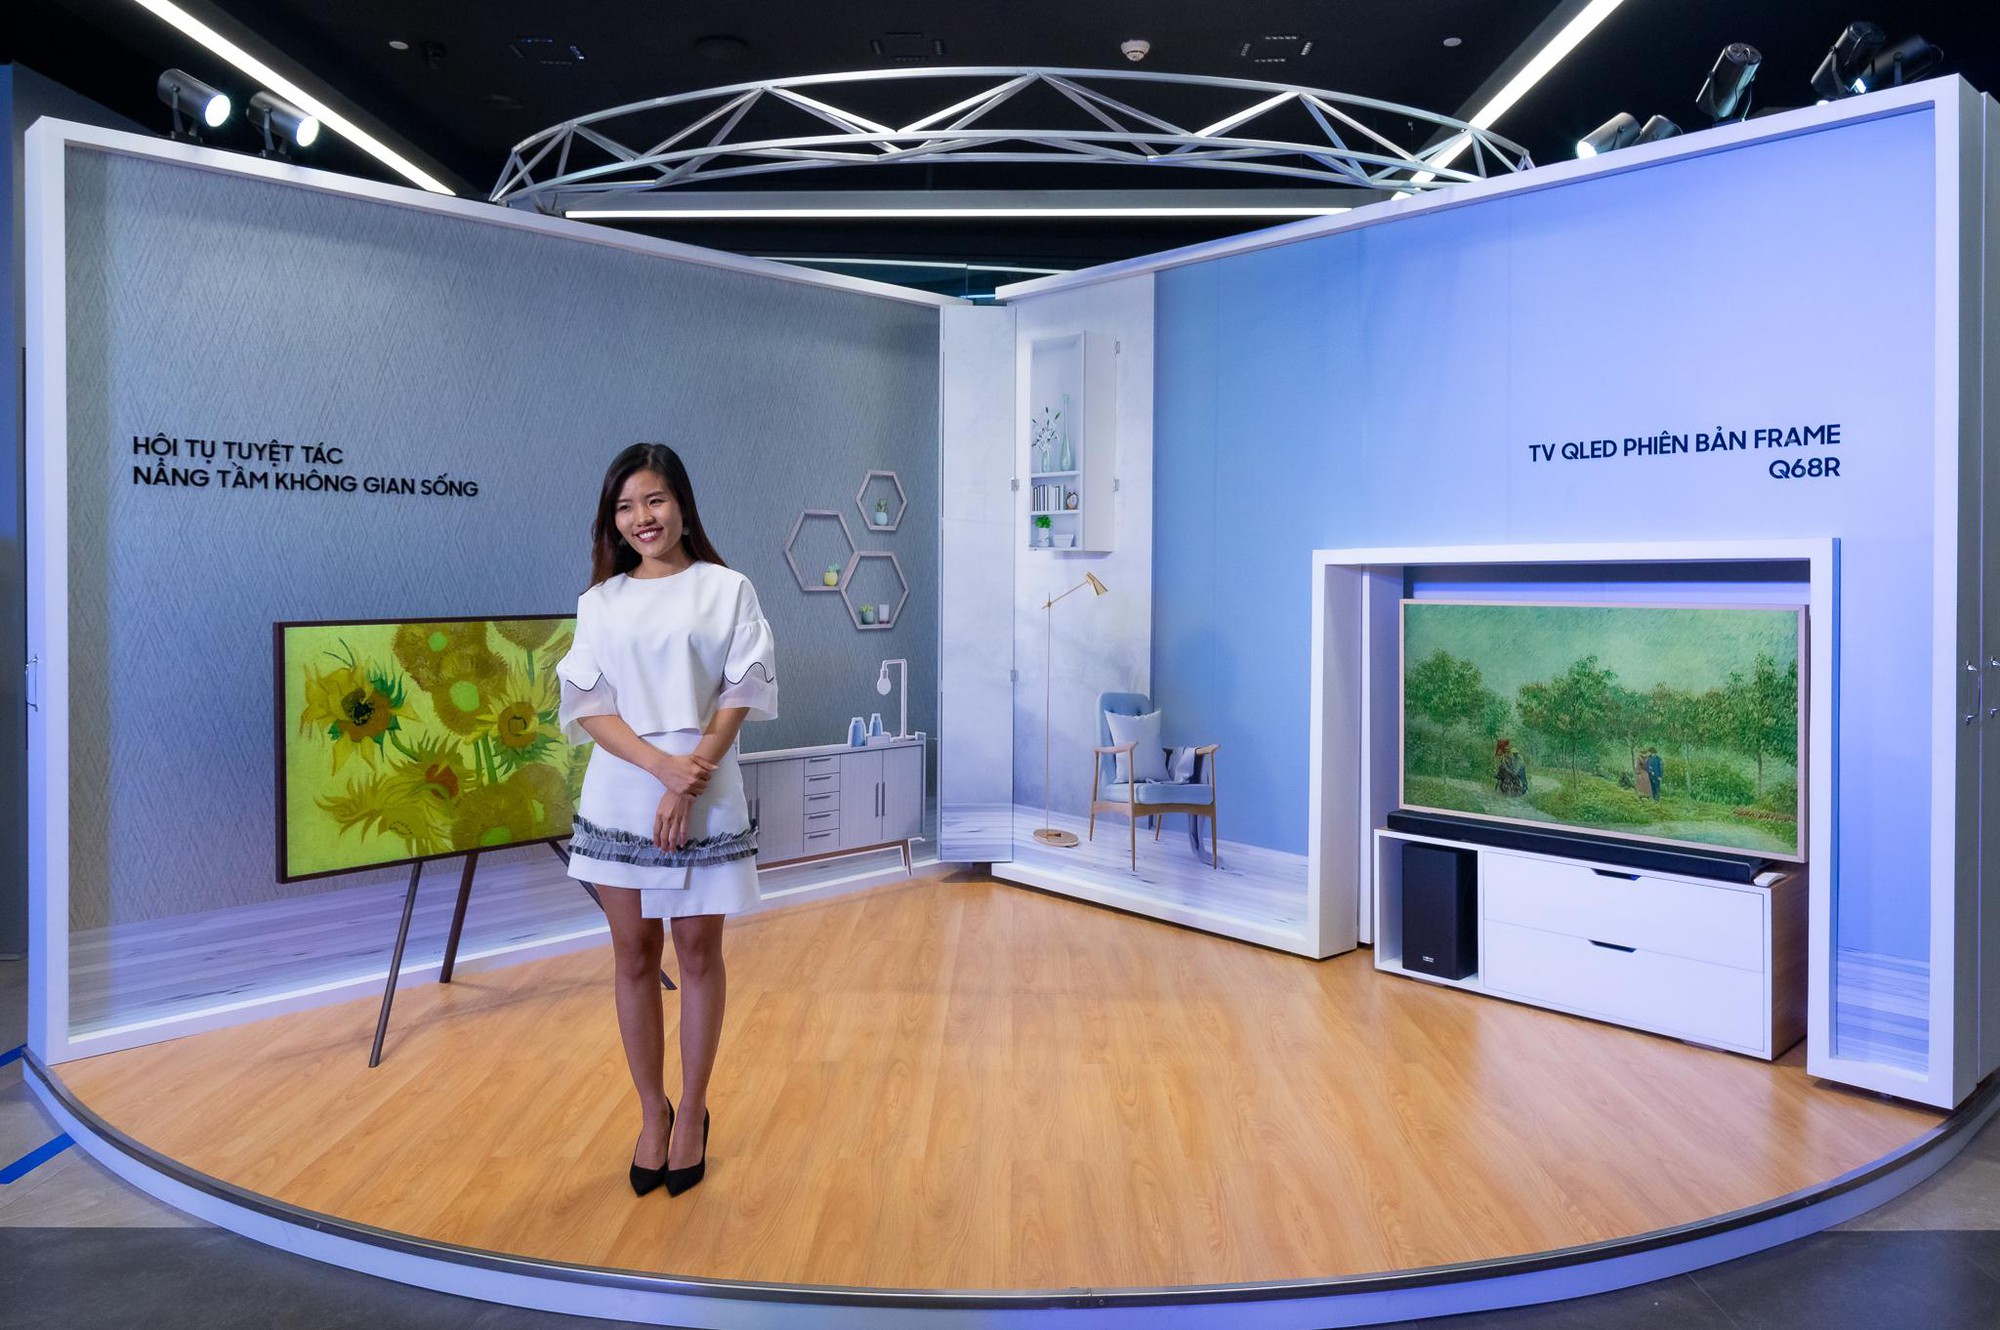 Biến TV thành khung tranh độc đáo, Triển lãm bộ sưu tập Van Gogh tại Samsung Showcase thu hút người tham dự - Ảnh 2.